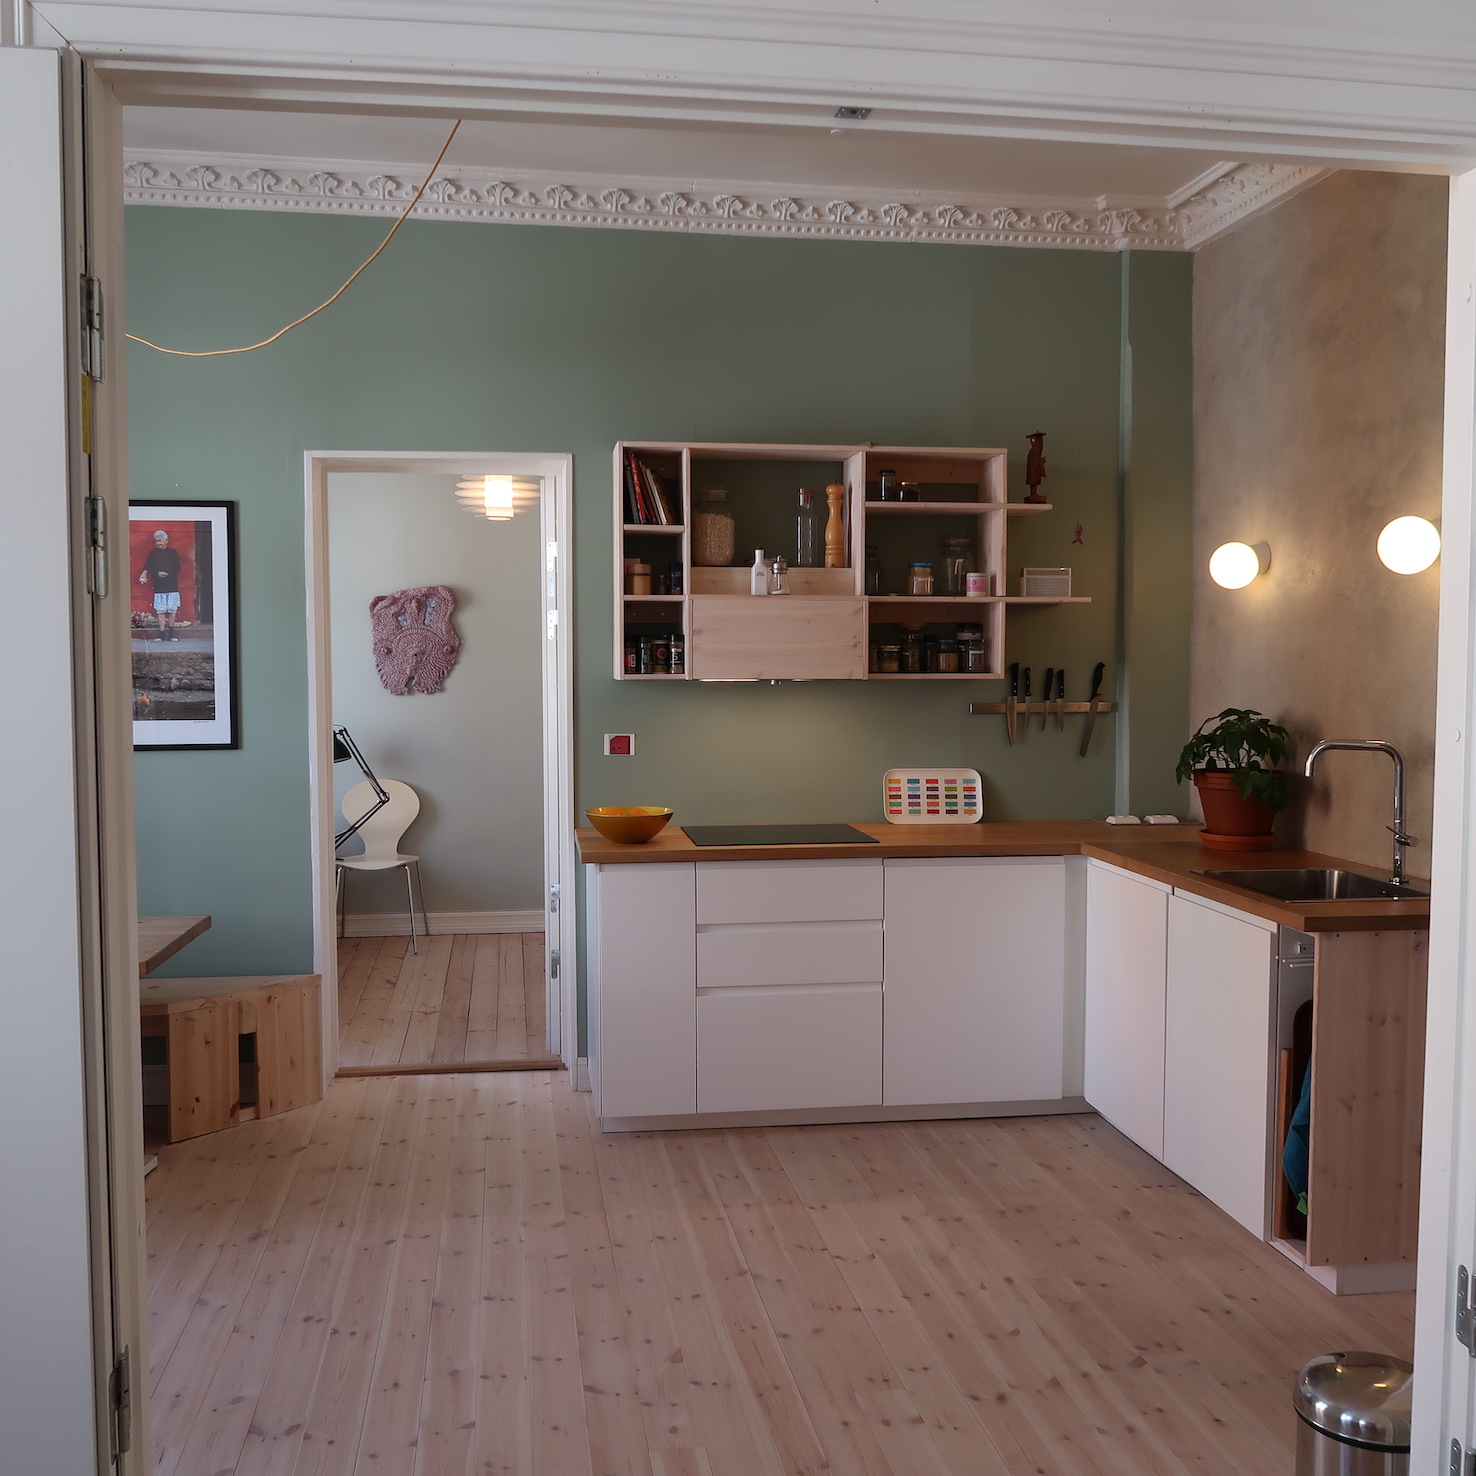 Bilde av kjøkken hvor man ser inn til soverommet. I hjørnet står kjøkkenbenk og vask, rommet har få ting og er åpent. En vegg har upusset mur, mens de andre er malt.